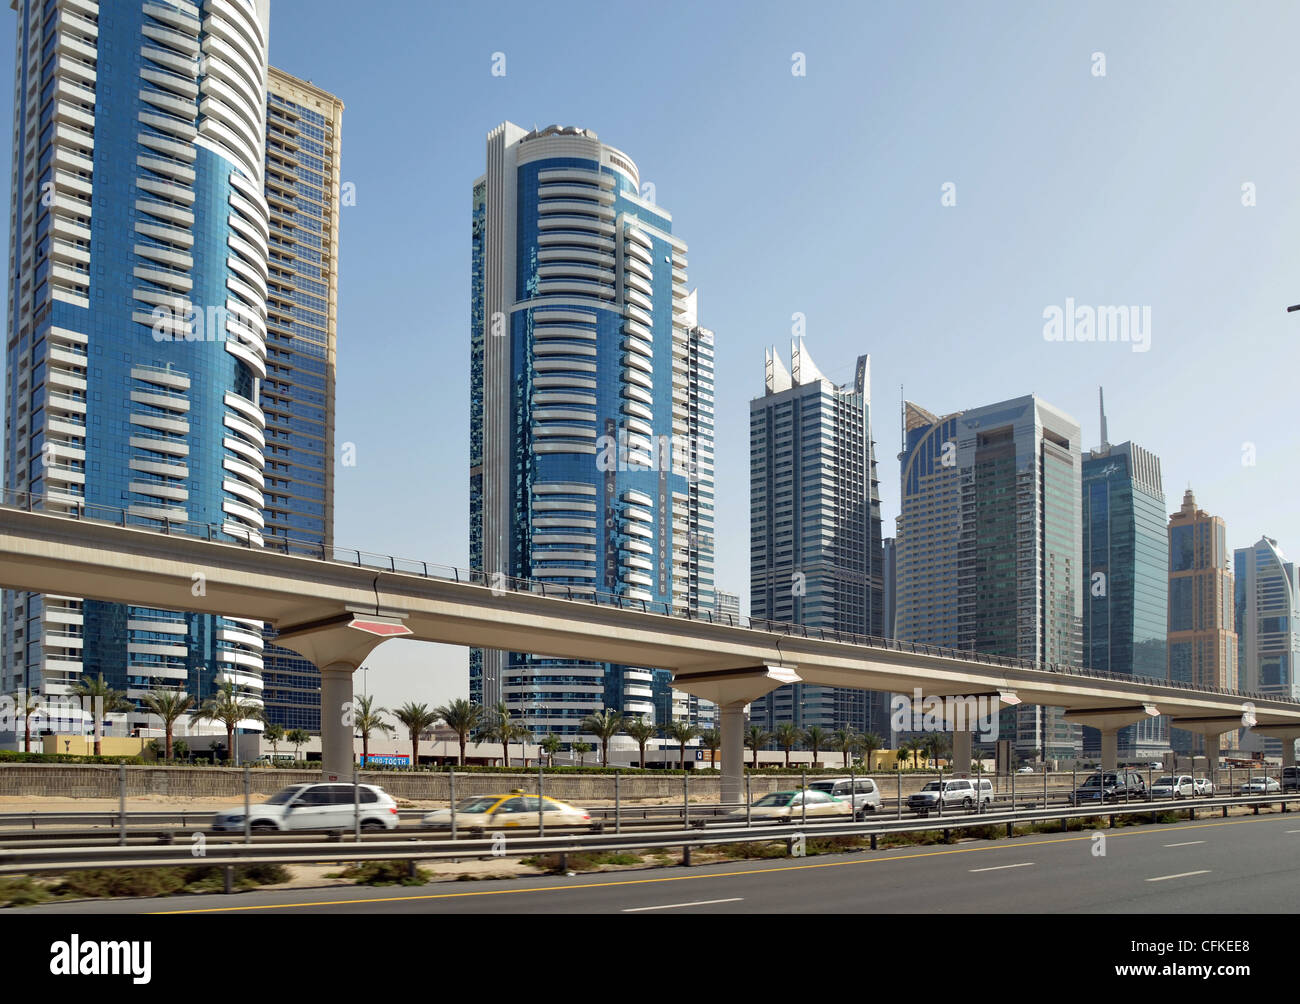 Cityscape - Dubaï moderne, des routes larges, une architecture moderne et un système de métro automatique Banque D'Images